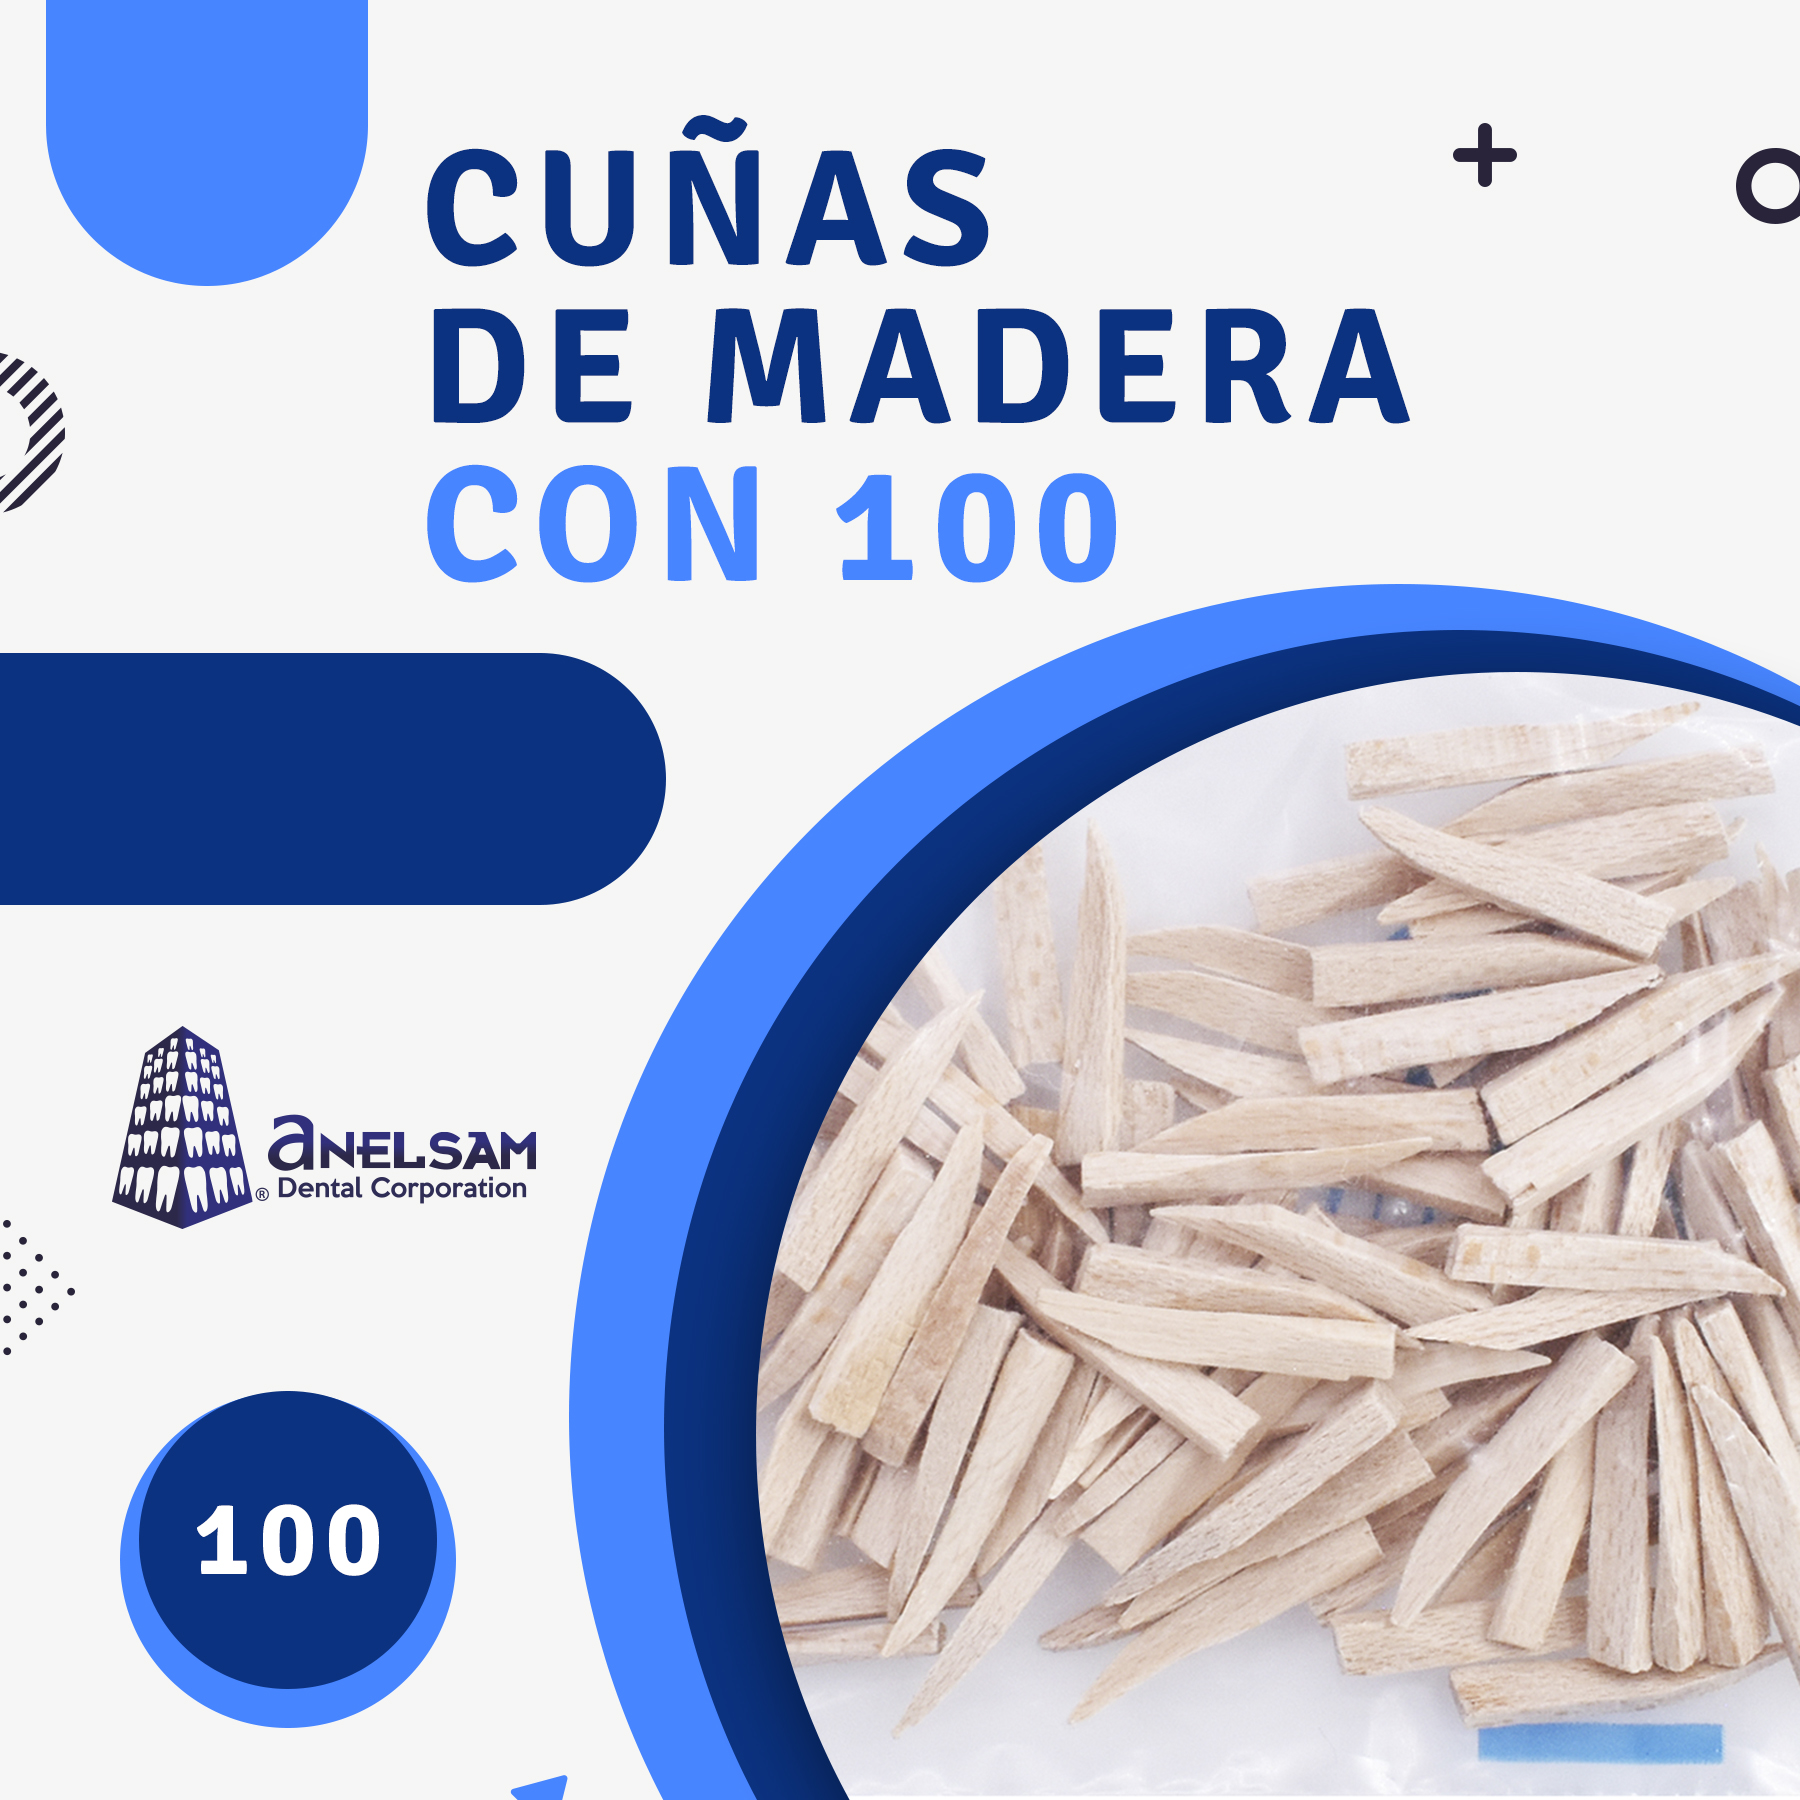 CUÑAS DE MADERA CON 100 - Anelsam